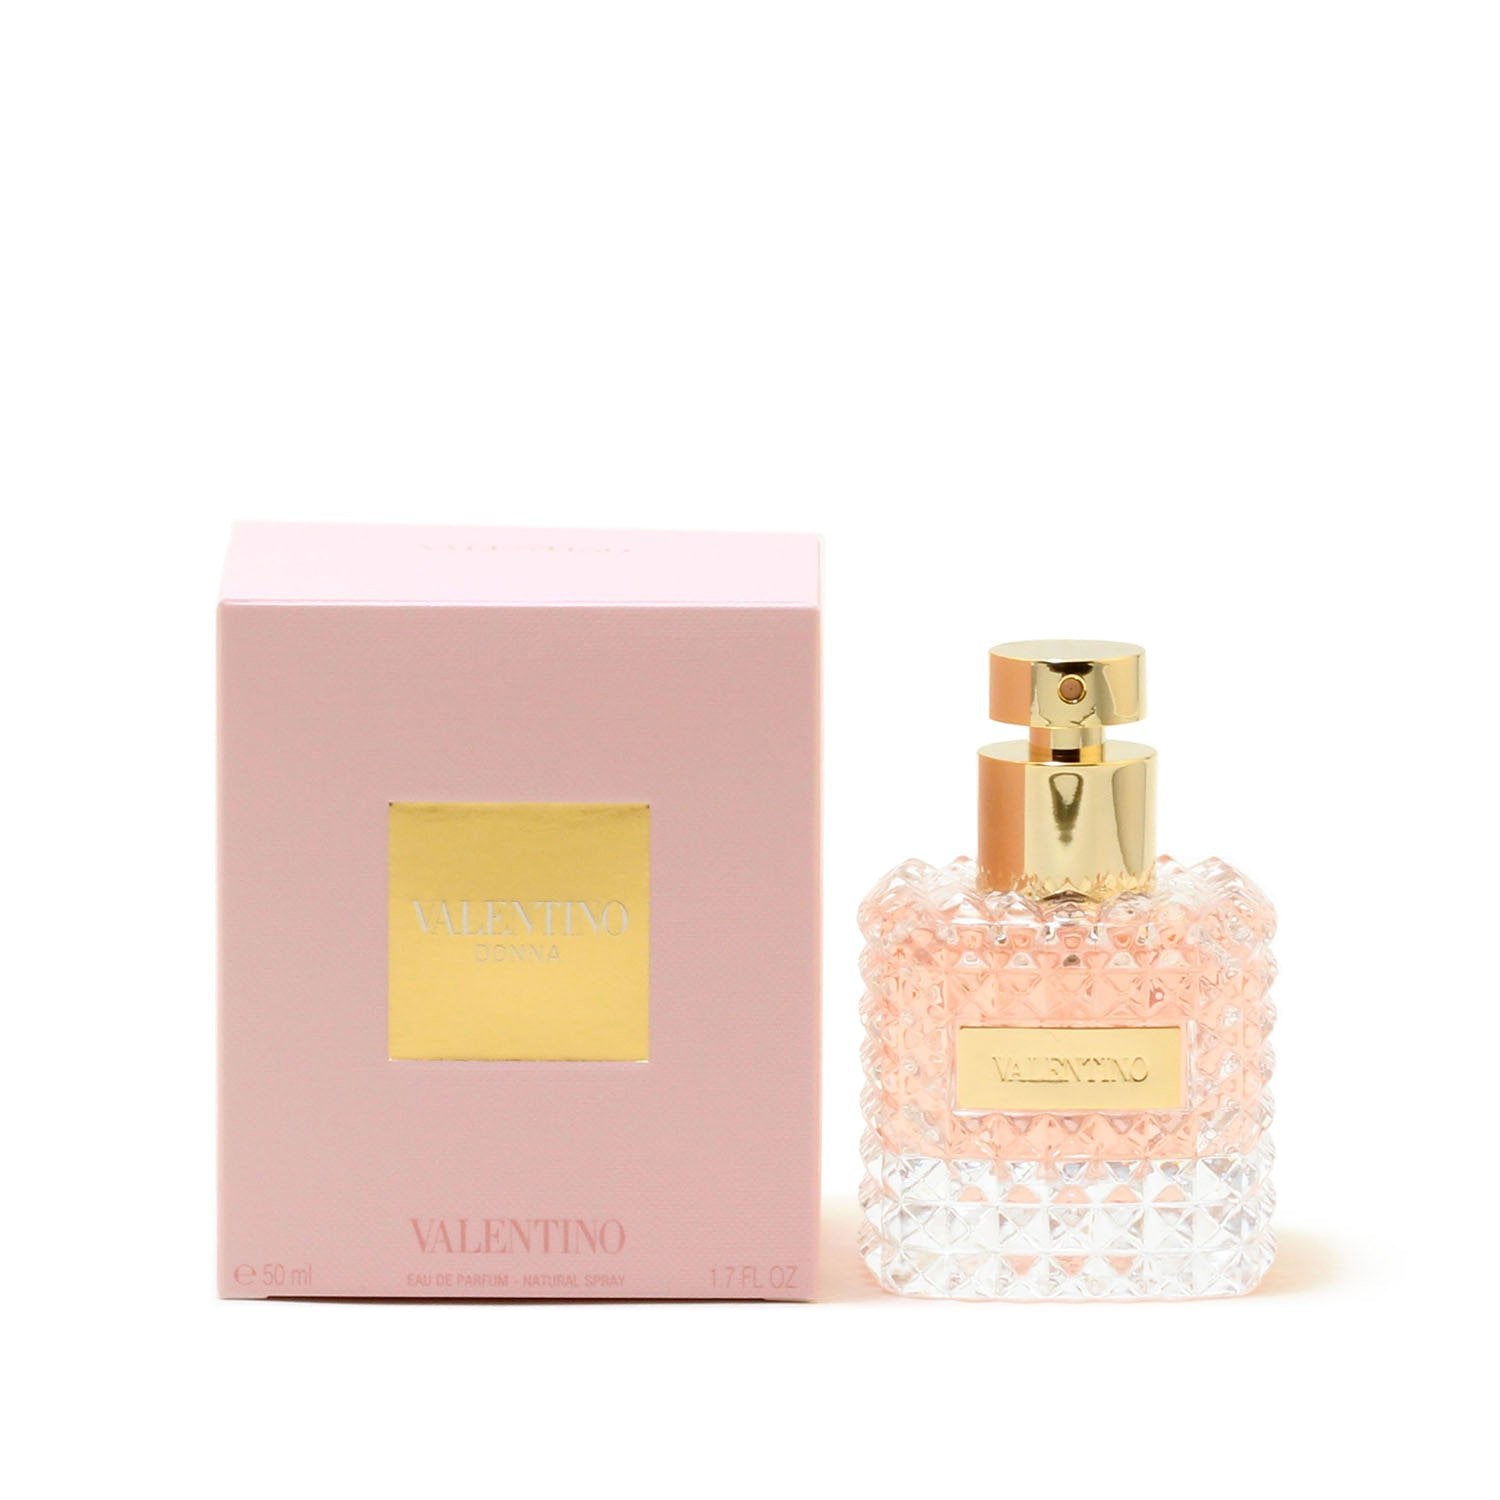 Perfume - VALENTINO DONNA FOR WOMEN - EAU DE PARFUM SPRAY